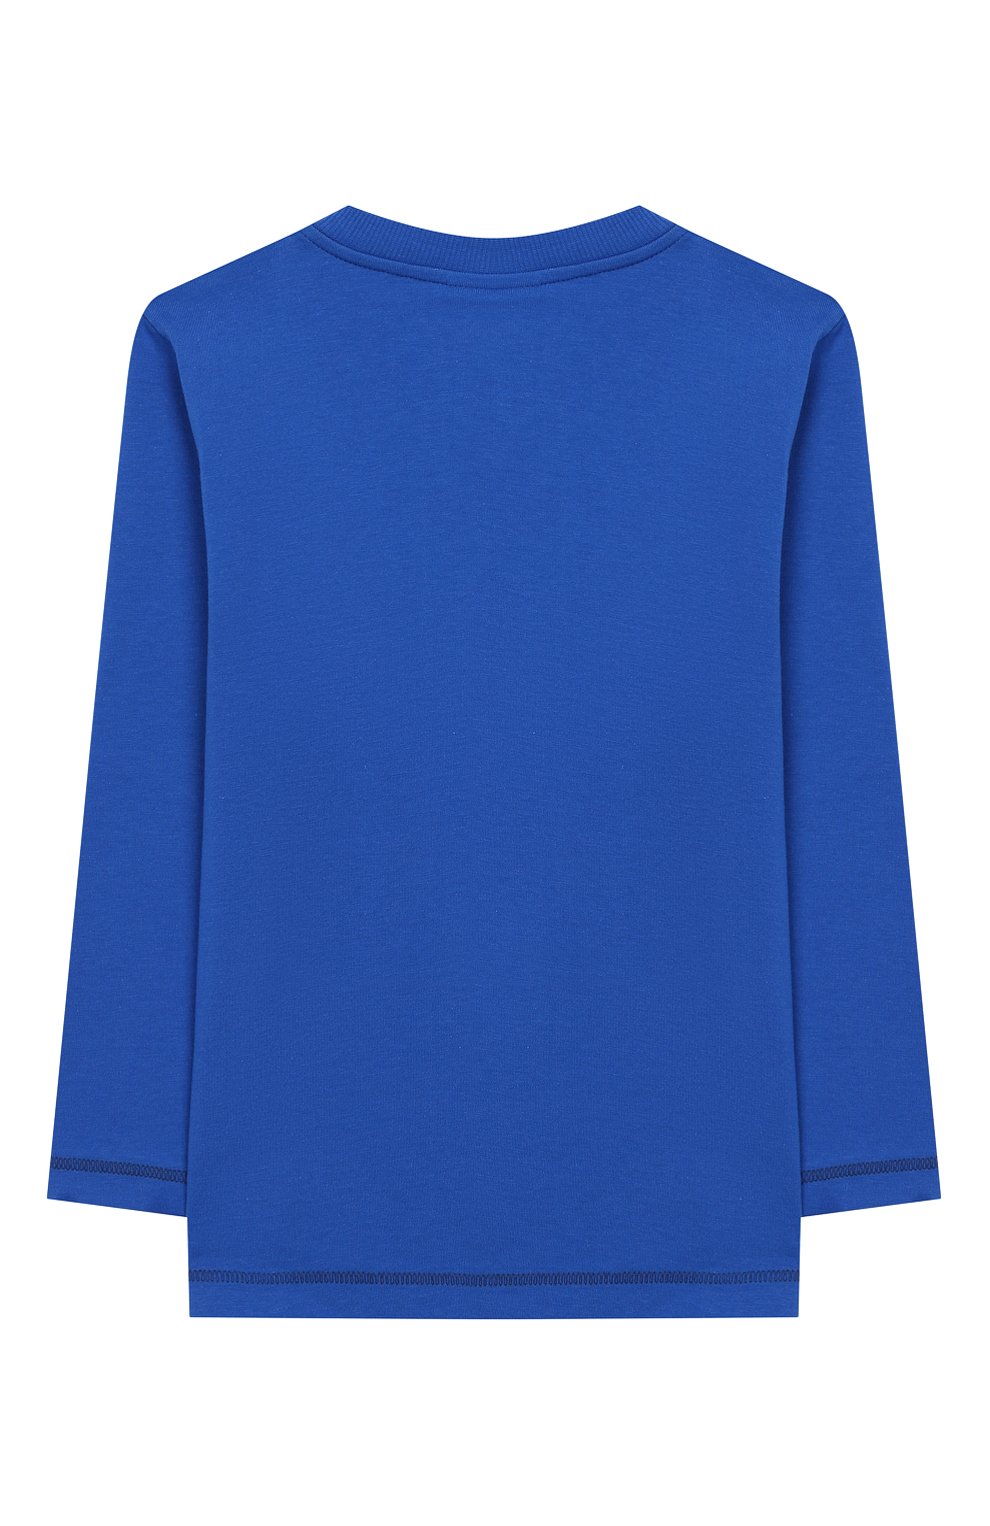 Женская хлопковая пижама SANETTA синего цвета, арт. 232449 0519 | Фото 3 (Рукава: Длинные; Материал внешний: Хлопок)